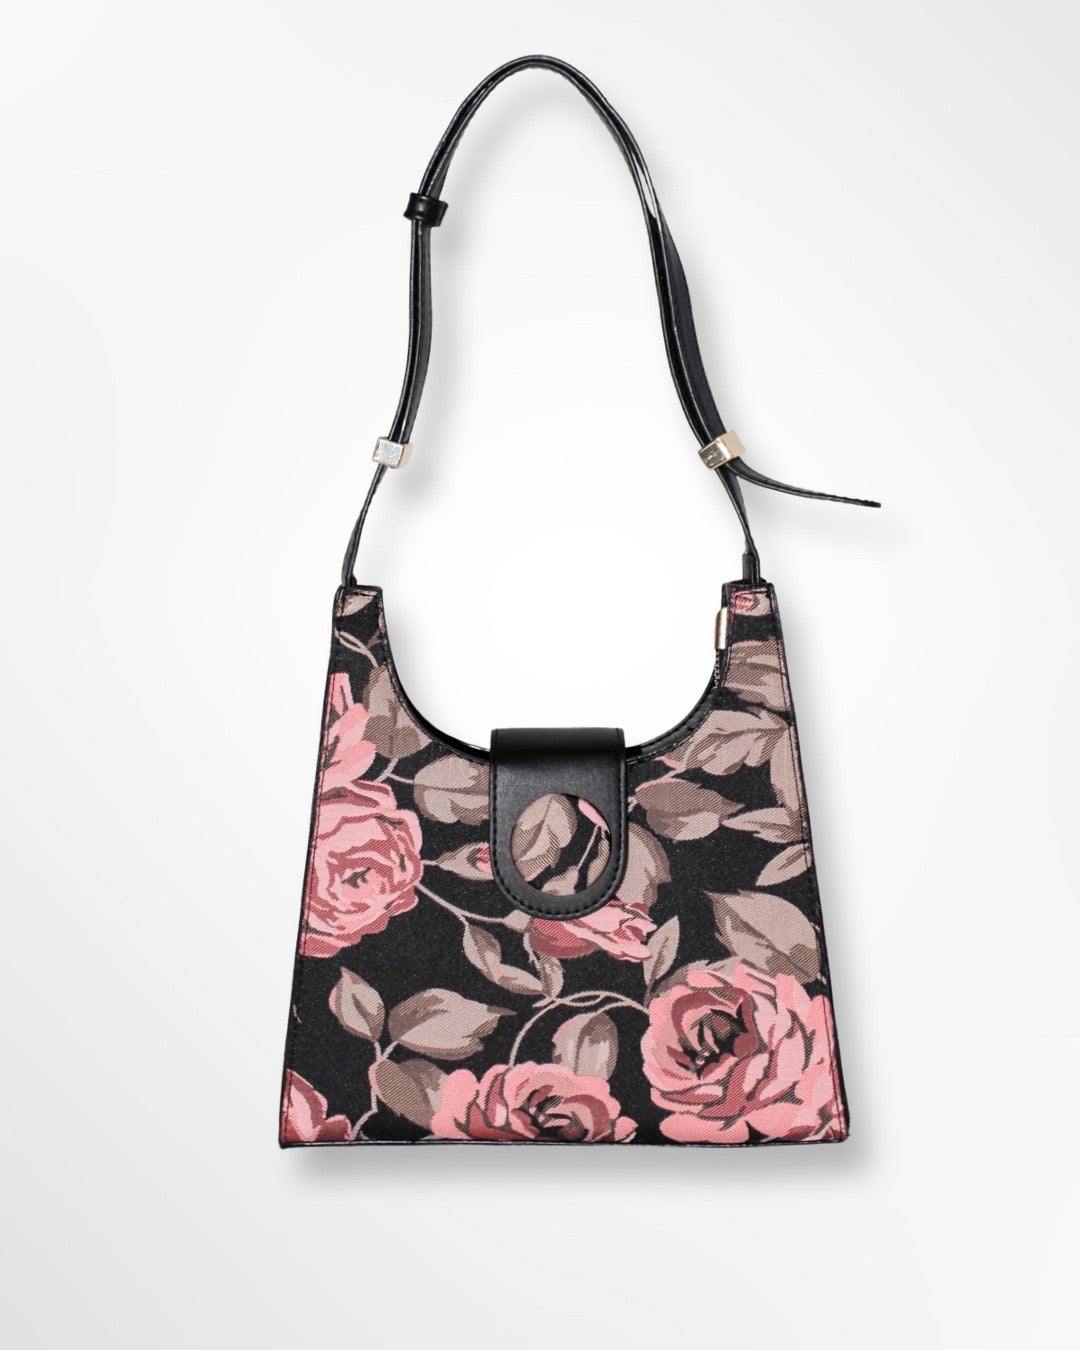 Vegan Leather Black/Pink Floral Hand Bag